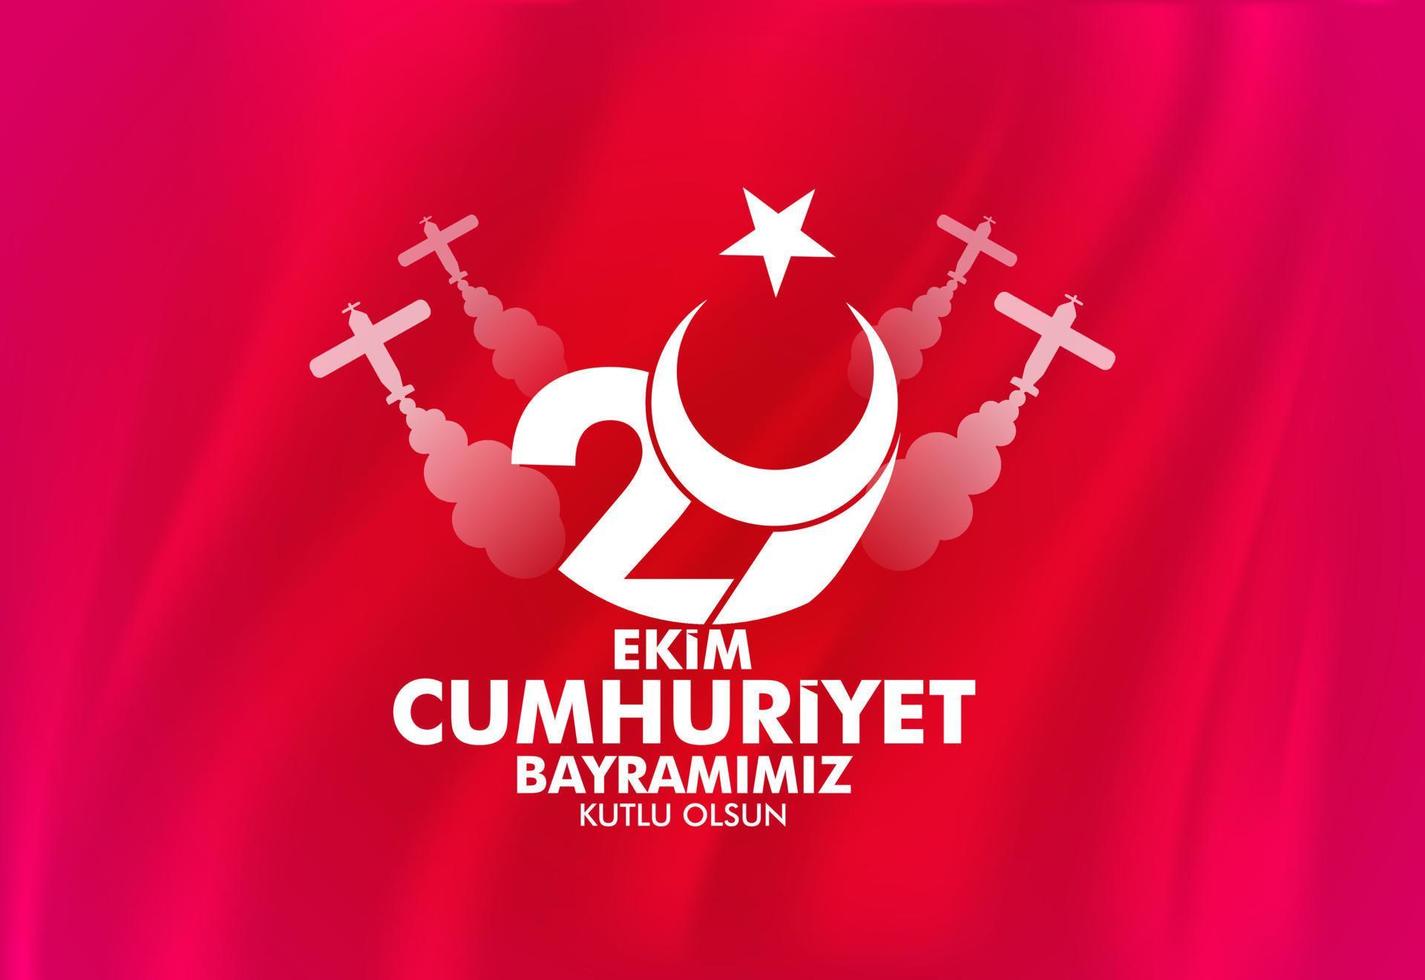 29 octobre avec le drapeau turc agitant le rouge. message de félicitations avec lune, étoile et vieil avion. traduction, joyeux 29 octobre jour de la république. vecteur